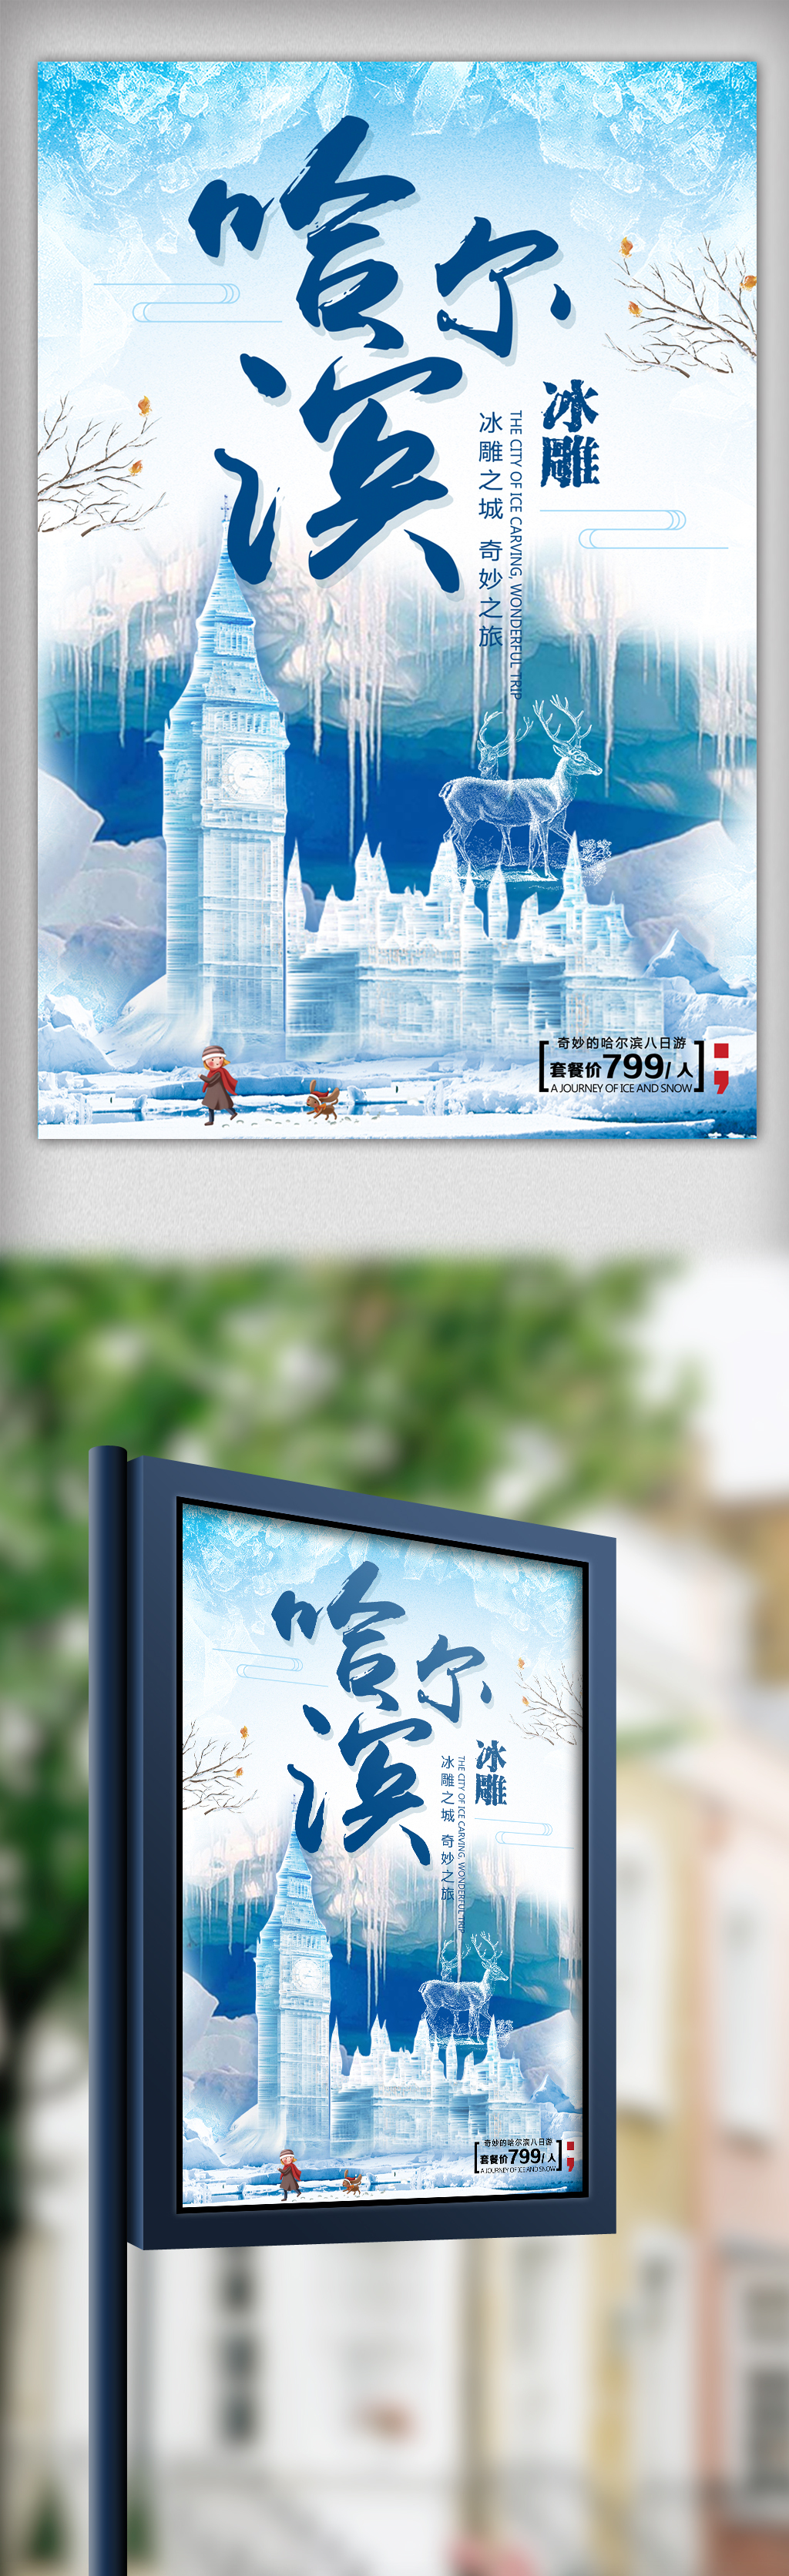 冰天雪地哈尔滨冰雕旅游海报图片